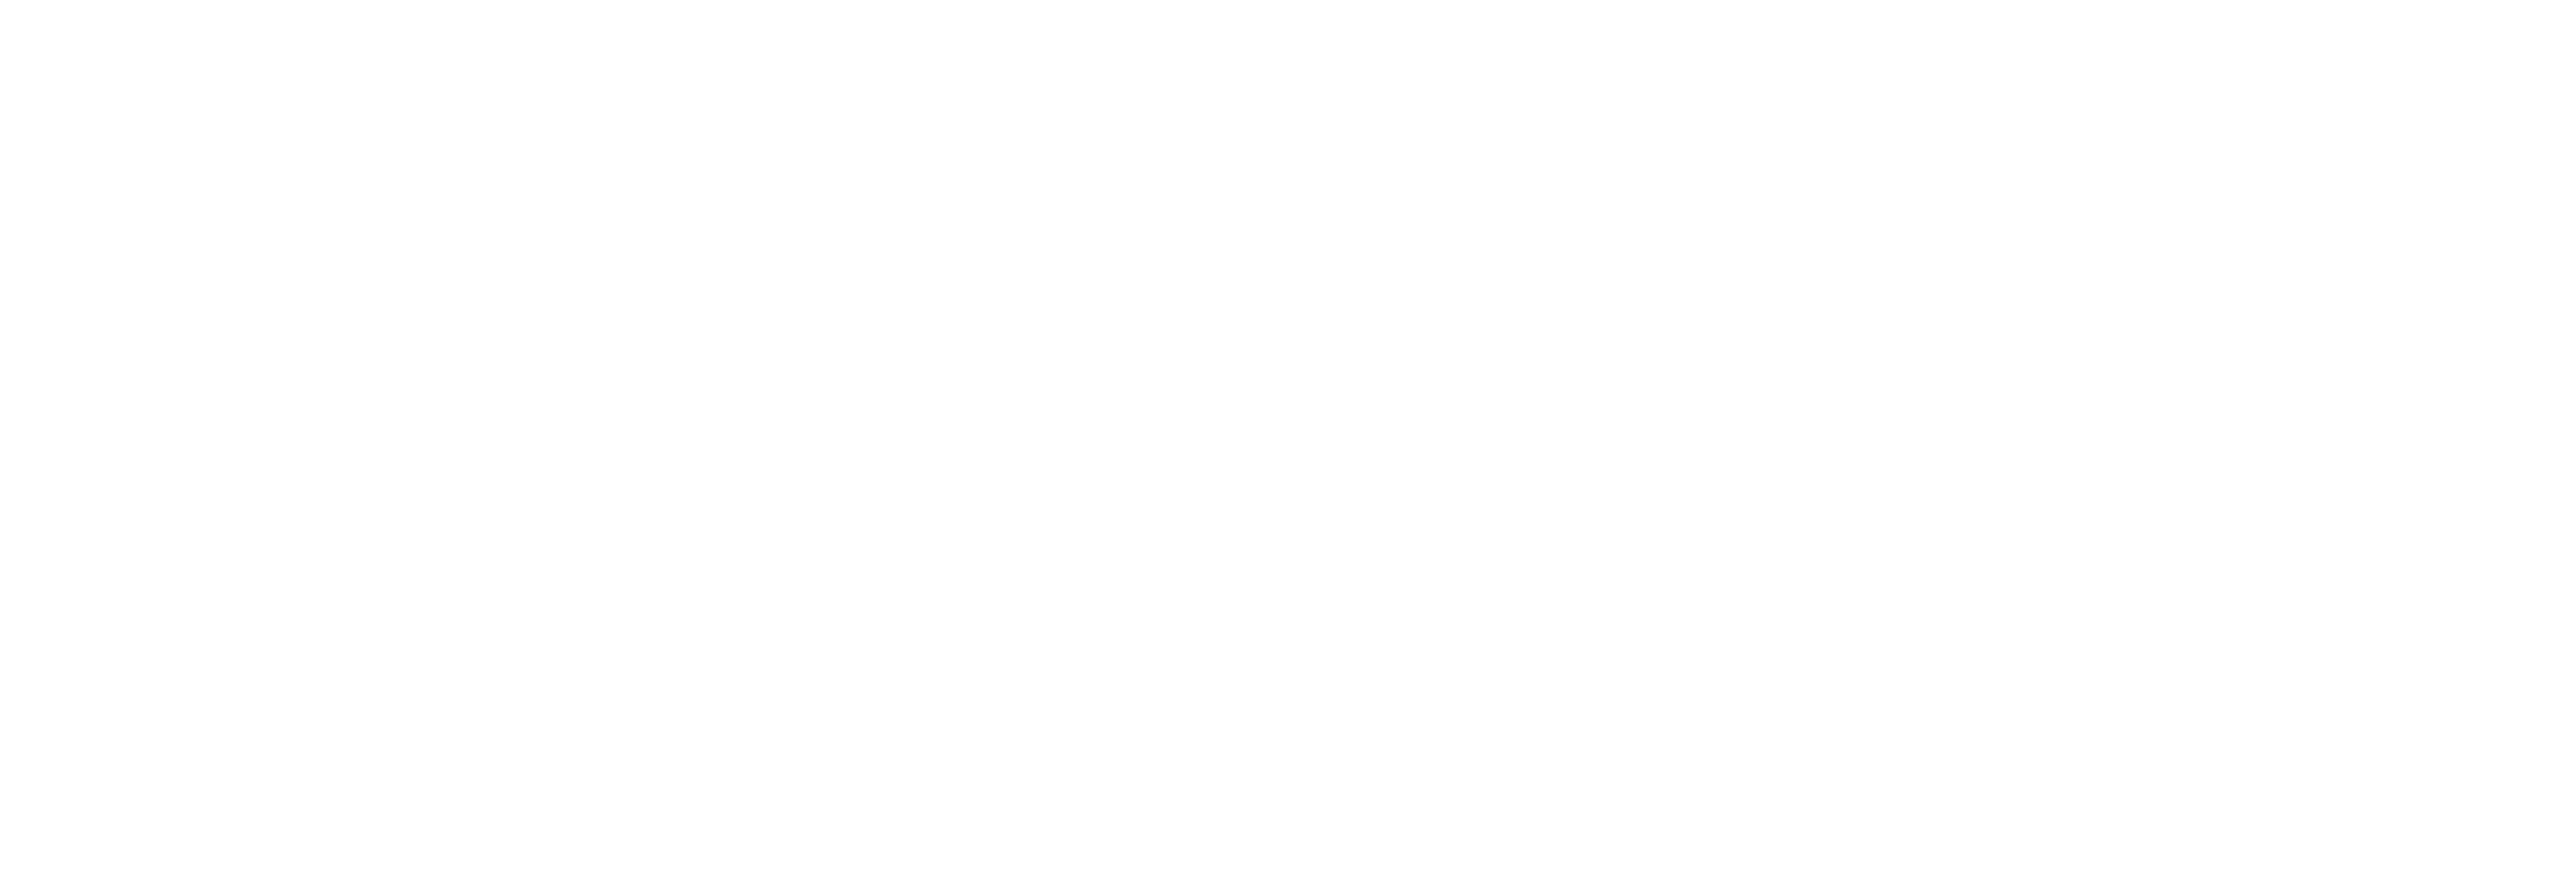 Meteor Dash